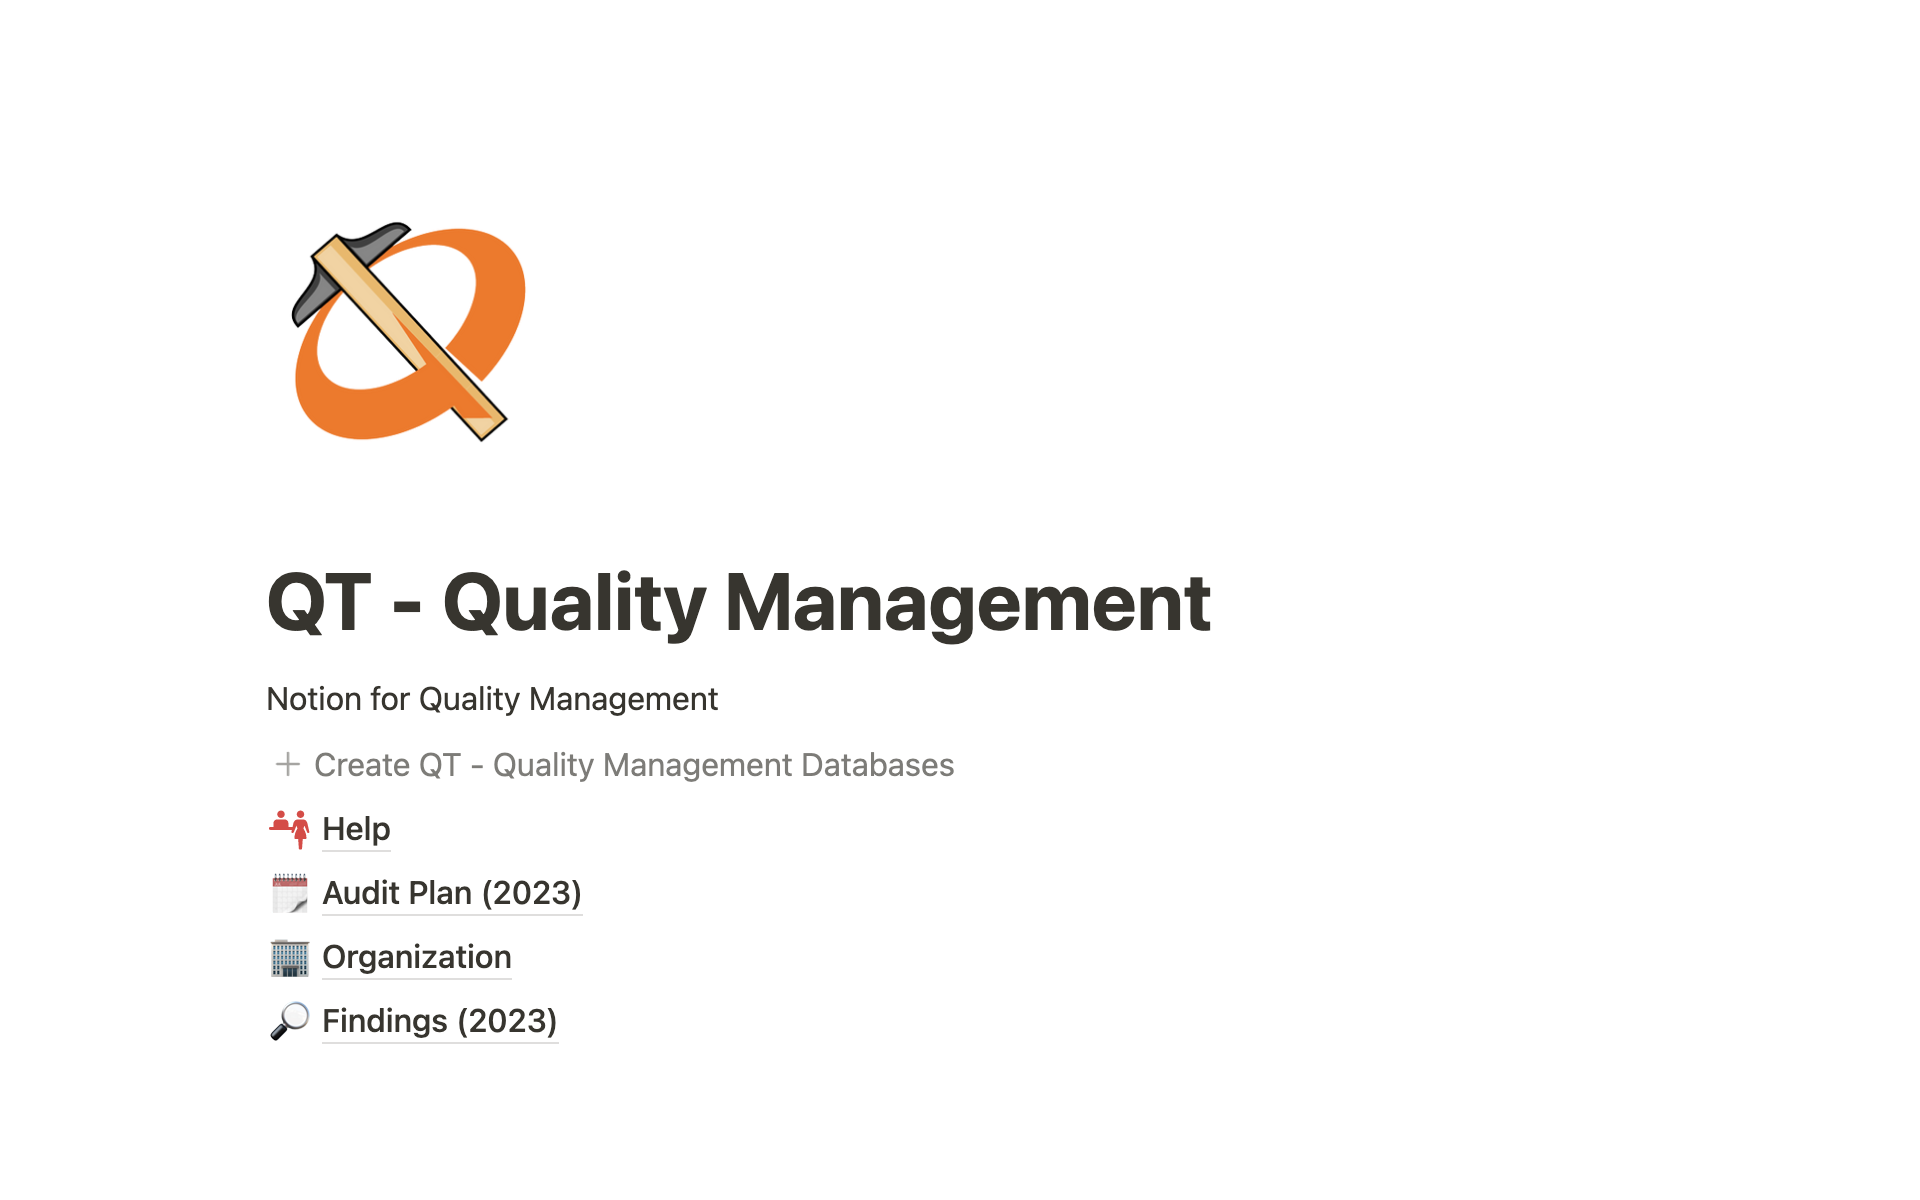 Vista previa de una plantilla para QT - Quality Management